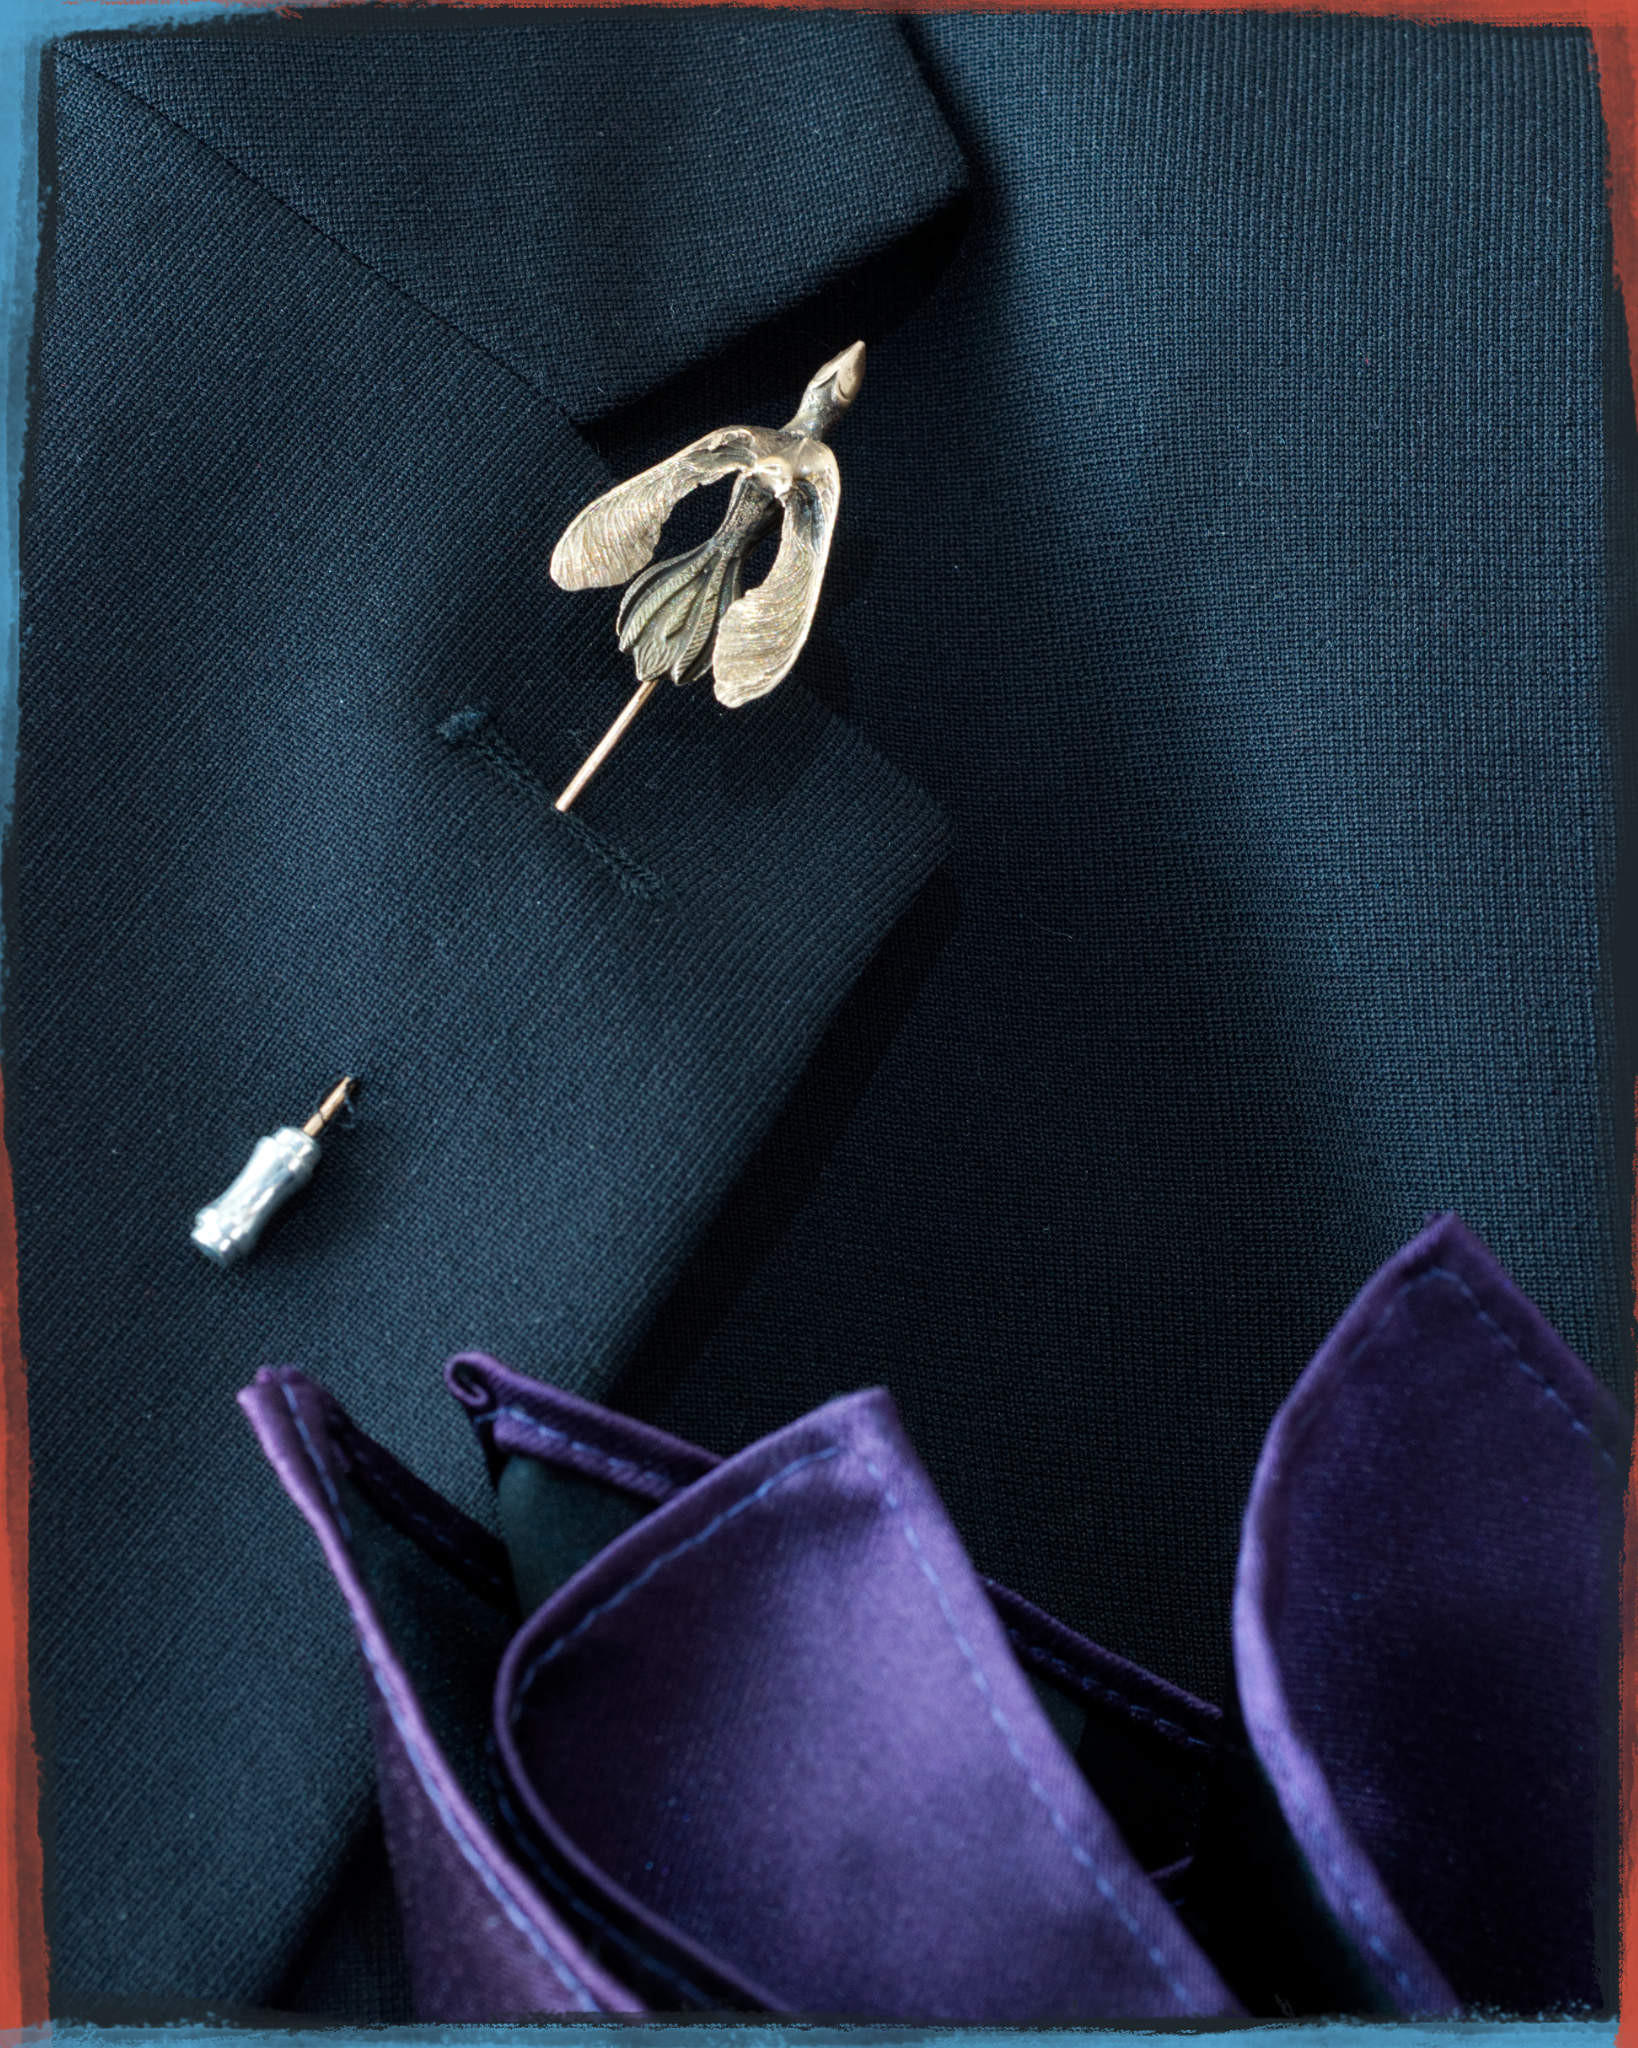 take_wing_bronze_pin_on_suit_lapel